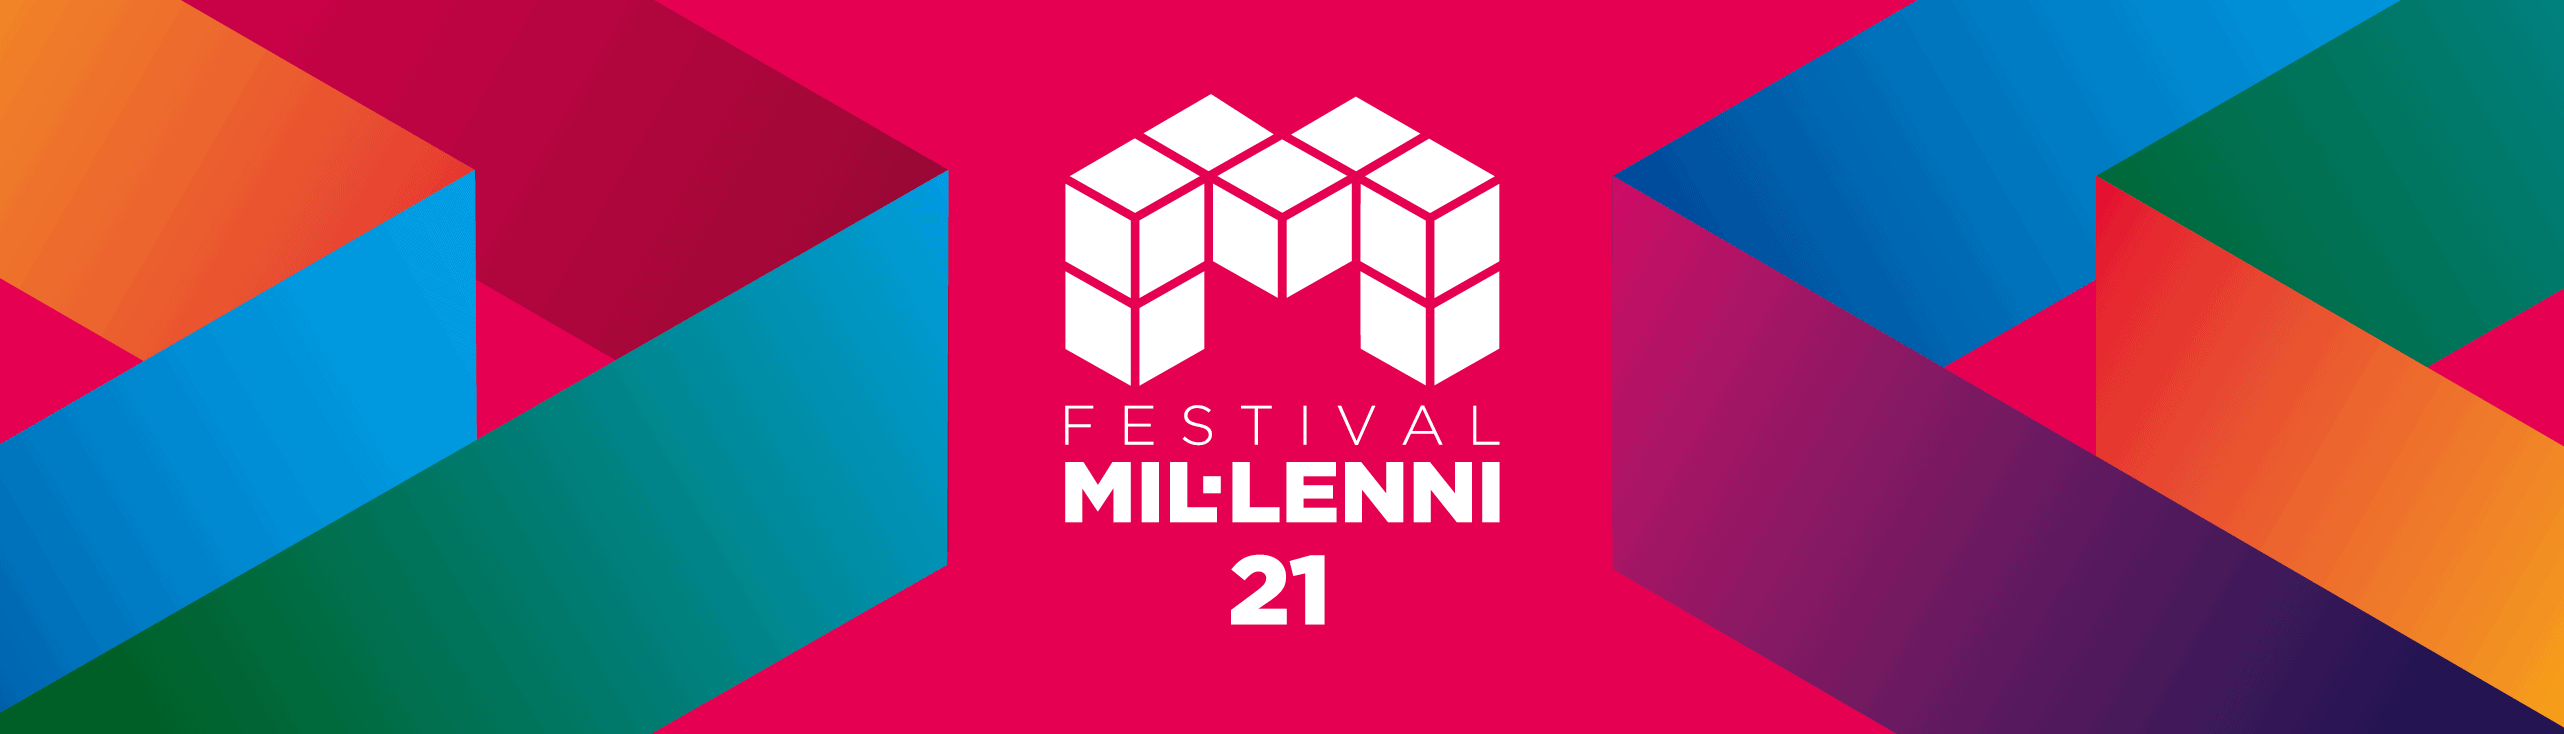 Festival Millenni en Barcelona 2019-2020